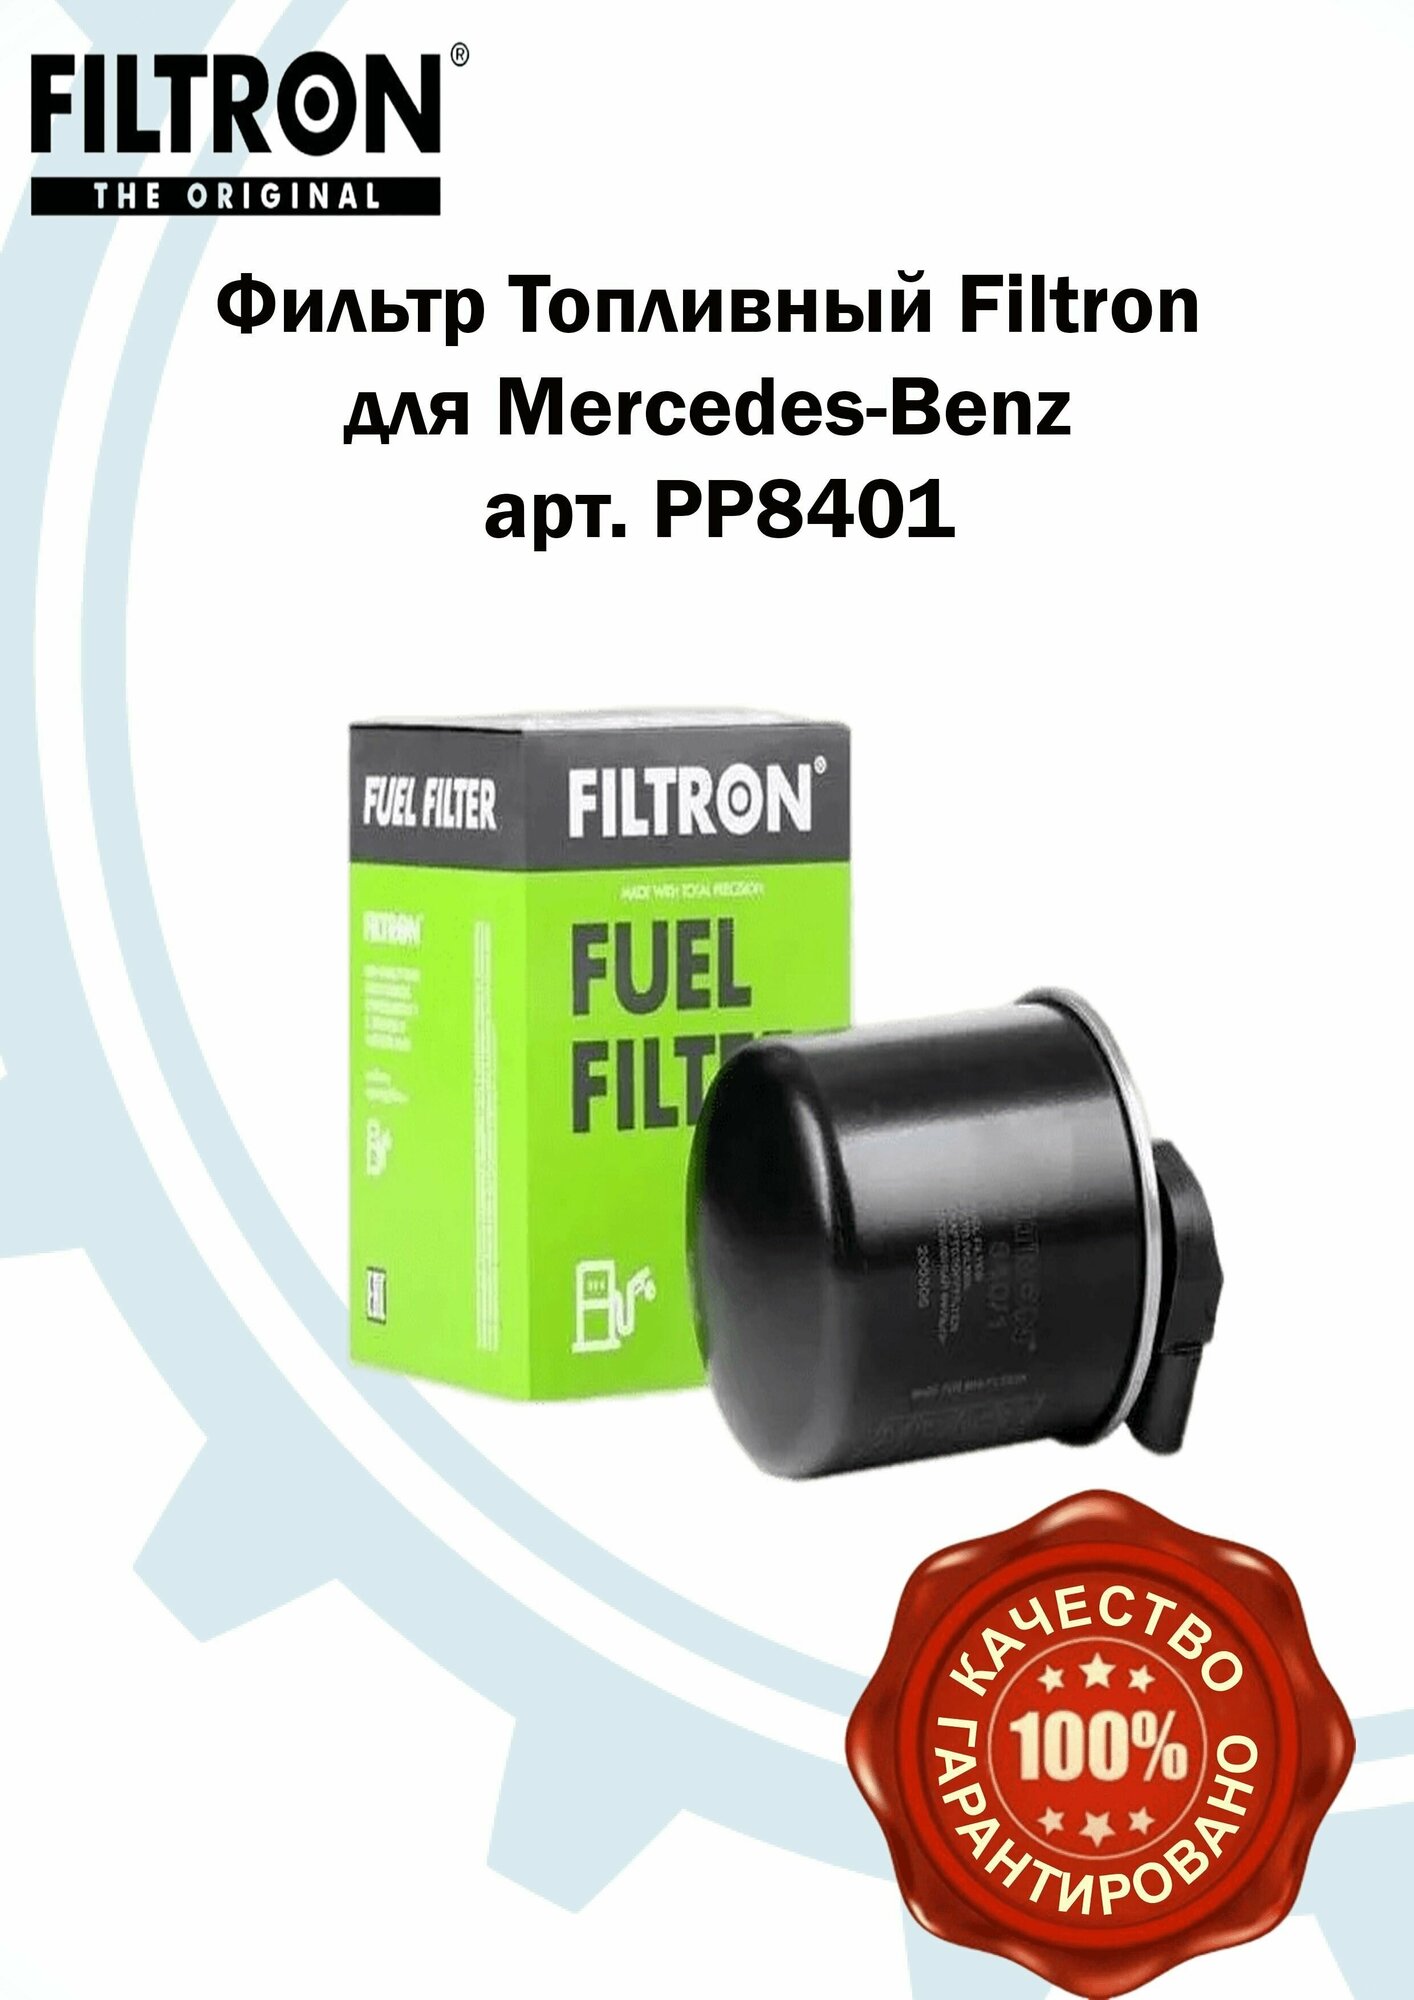 Фильтр Топливный FILTRON для Mercedes-Benz арт. PP8401